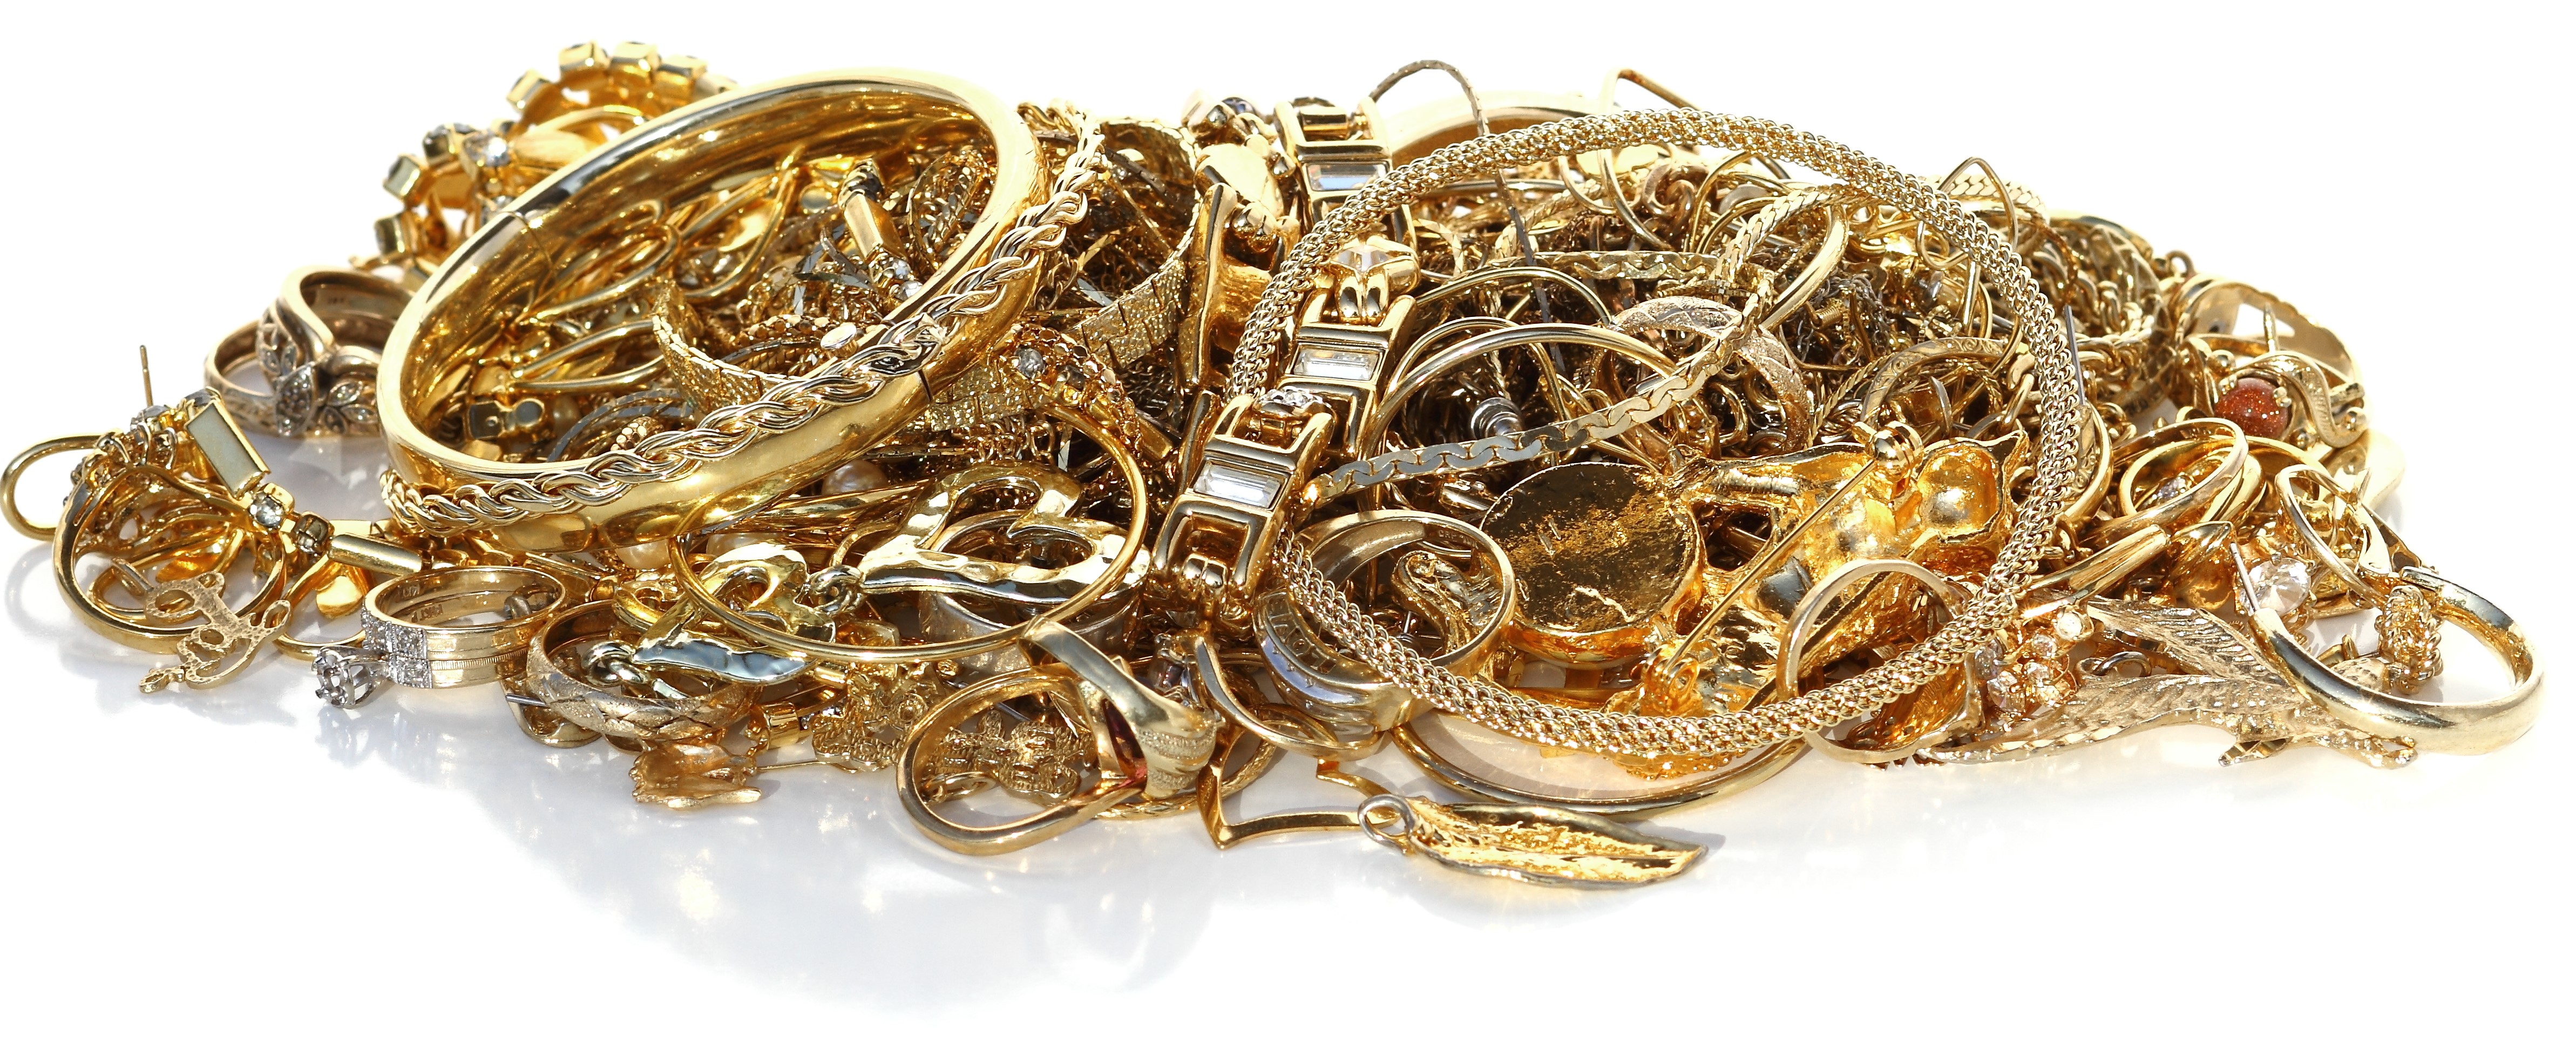 Verleiding seinpaal groot Oud goud en juwelen verkopen aan de beste prijs